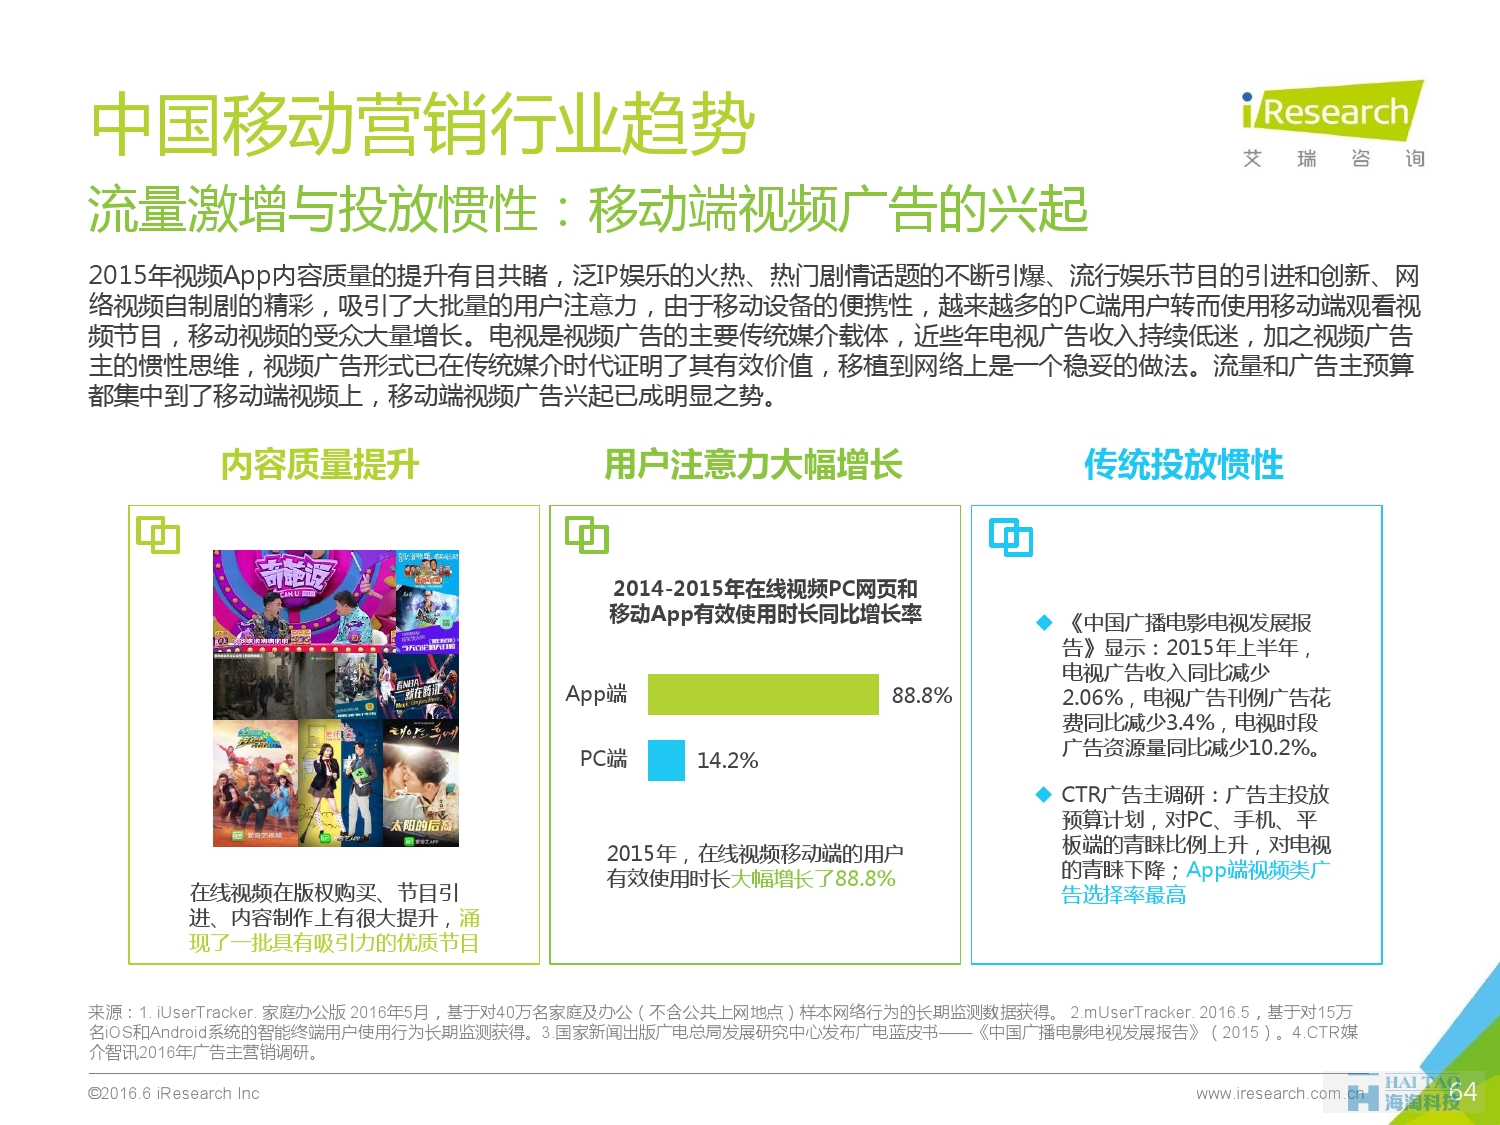 2016年中国移动营销行业研究报告——程序化时代篇_000064